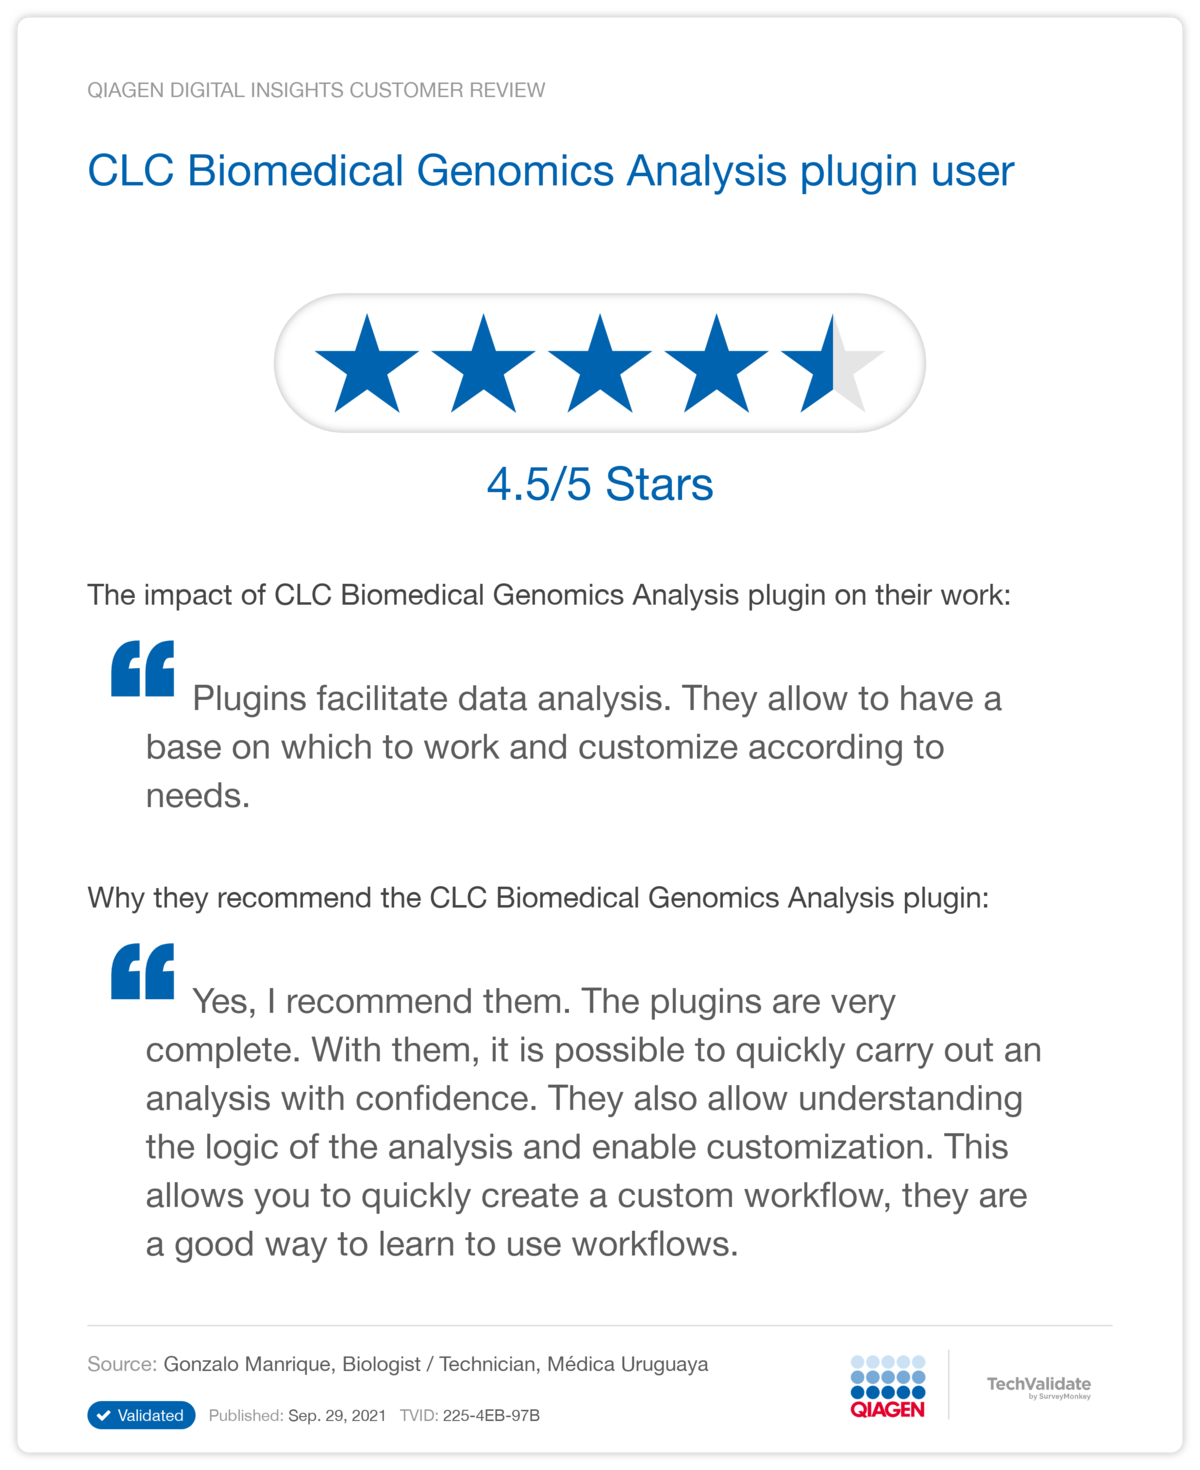 CLC Biomedical Genomics Analysis plugin user